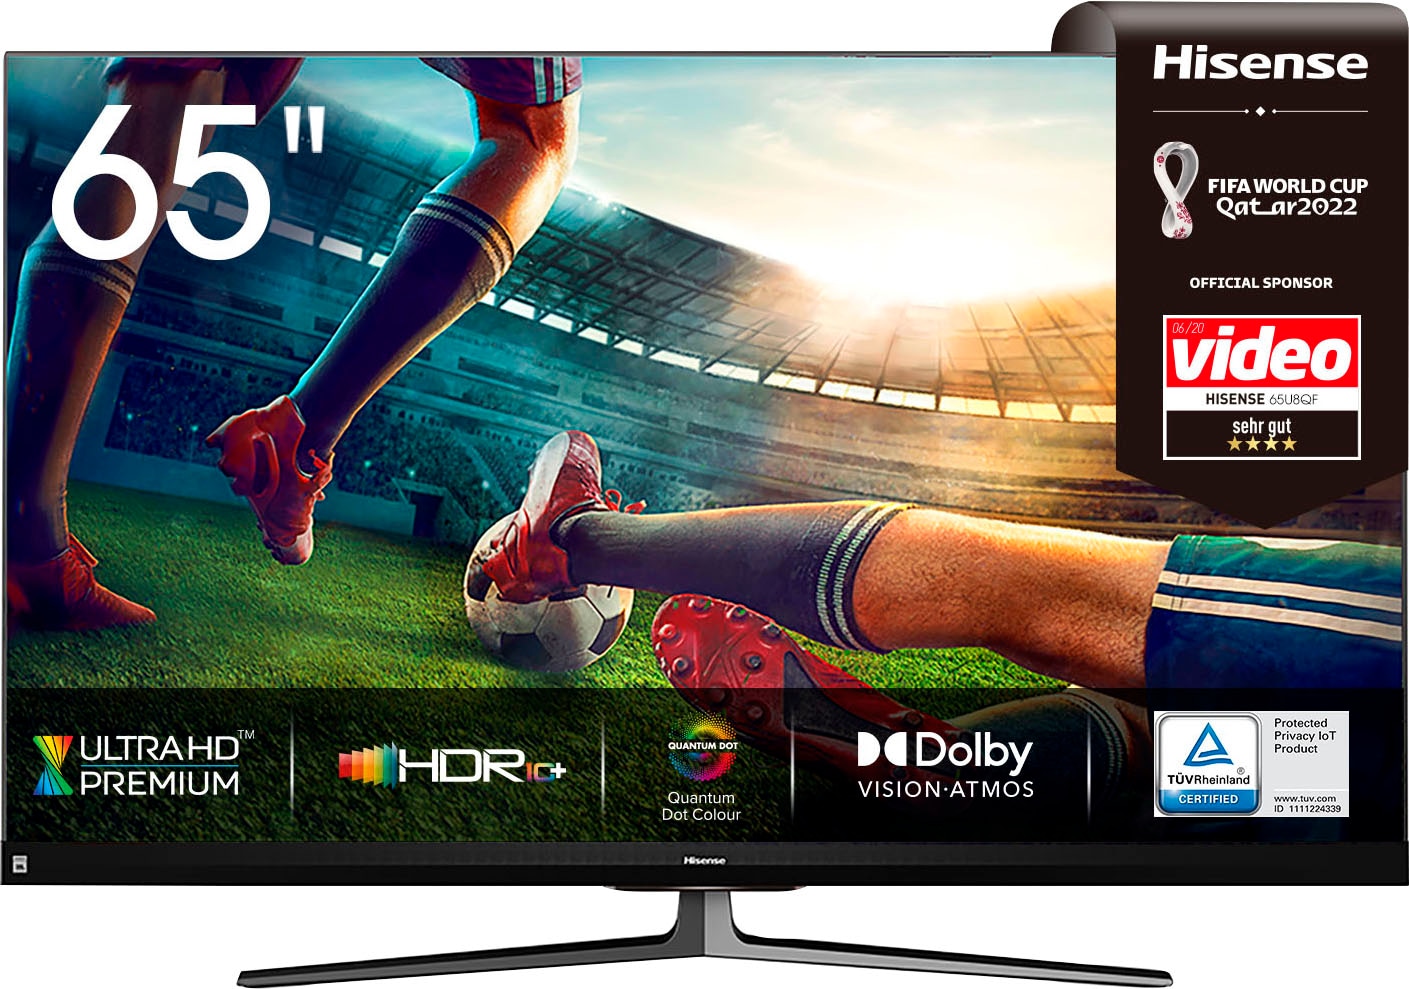 Hisense LED-Fernseher »65U8QF«, 164 cm/65 Zoll, 4K Ultra HD, Smart-TV,  Quantum Dot Technologie, 120Hz Panel, JBL sound, Alexa Built-in auf  Rechnung bestellen